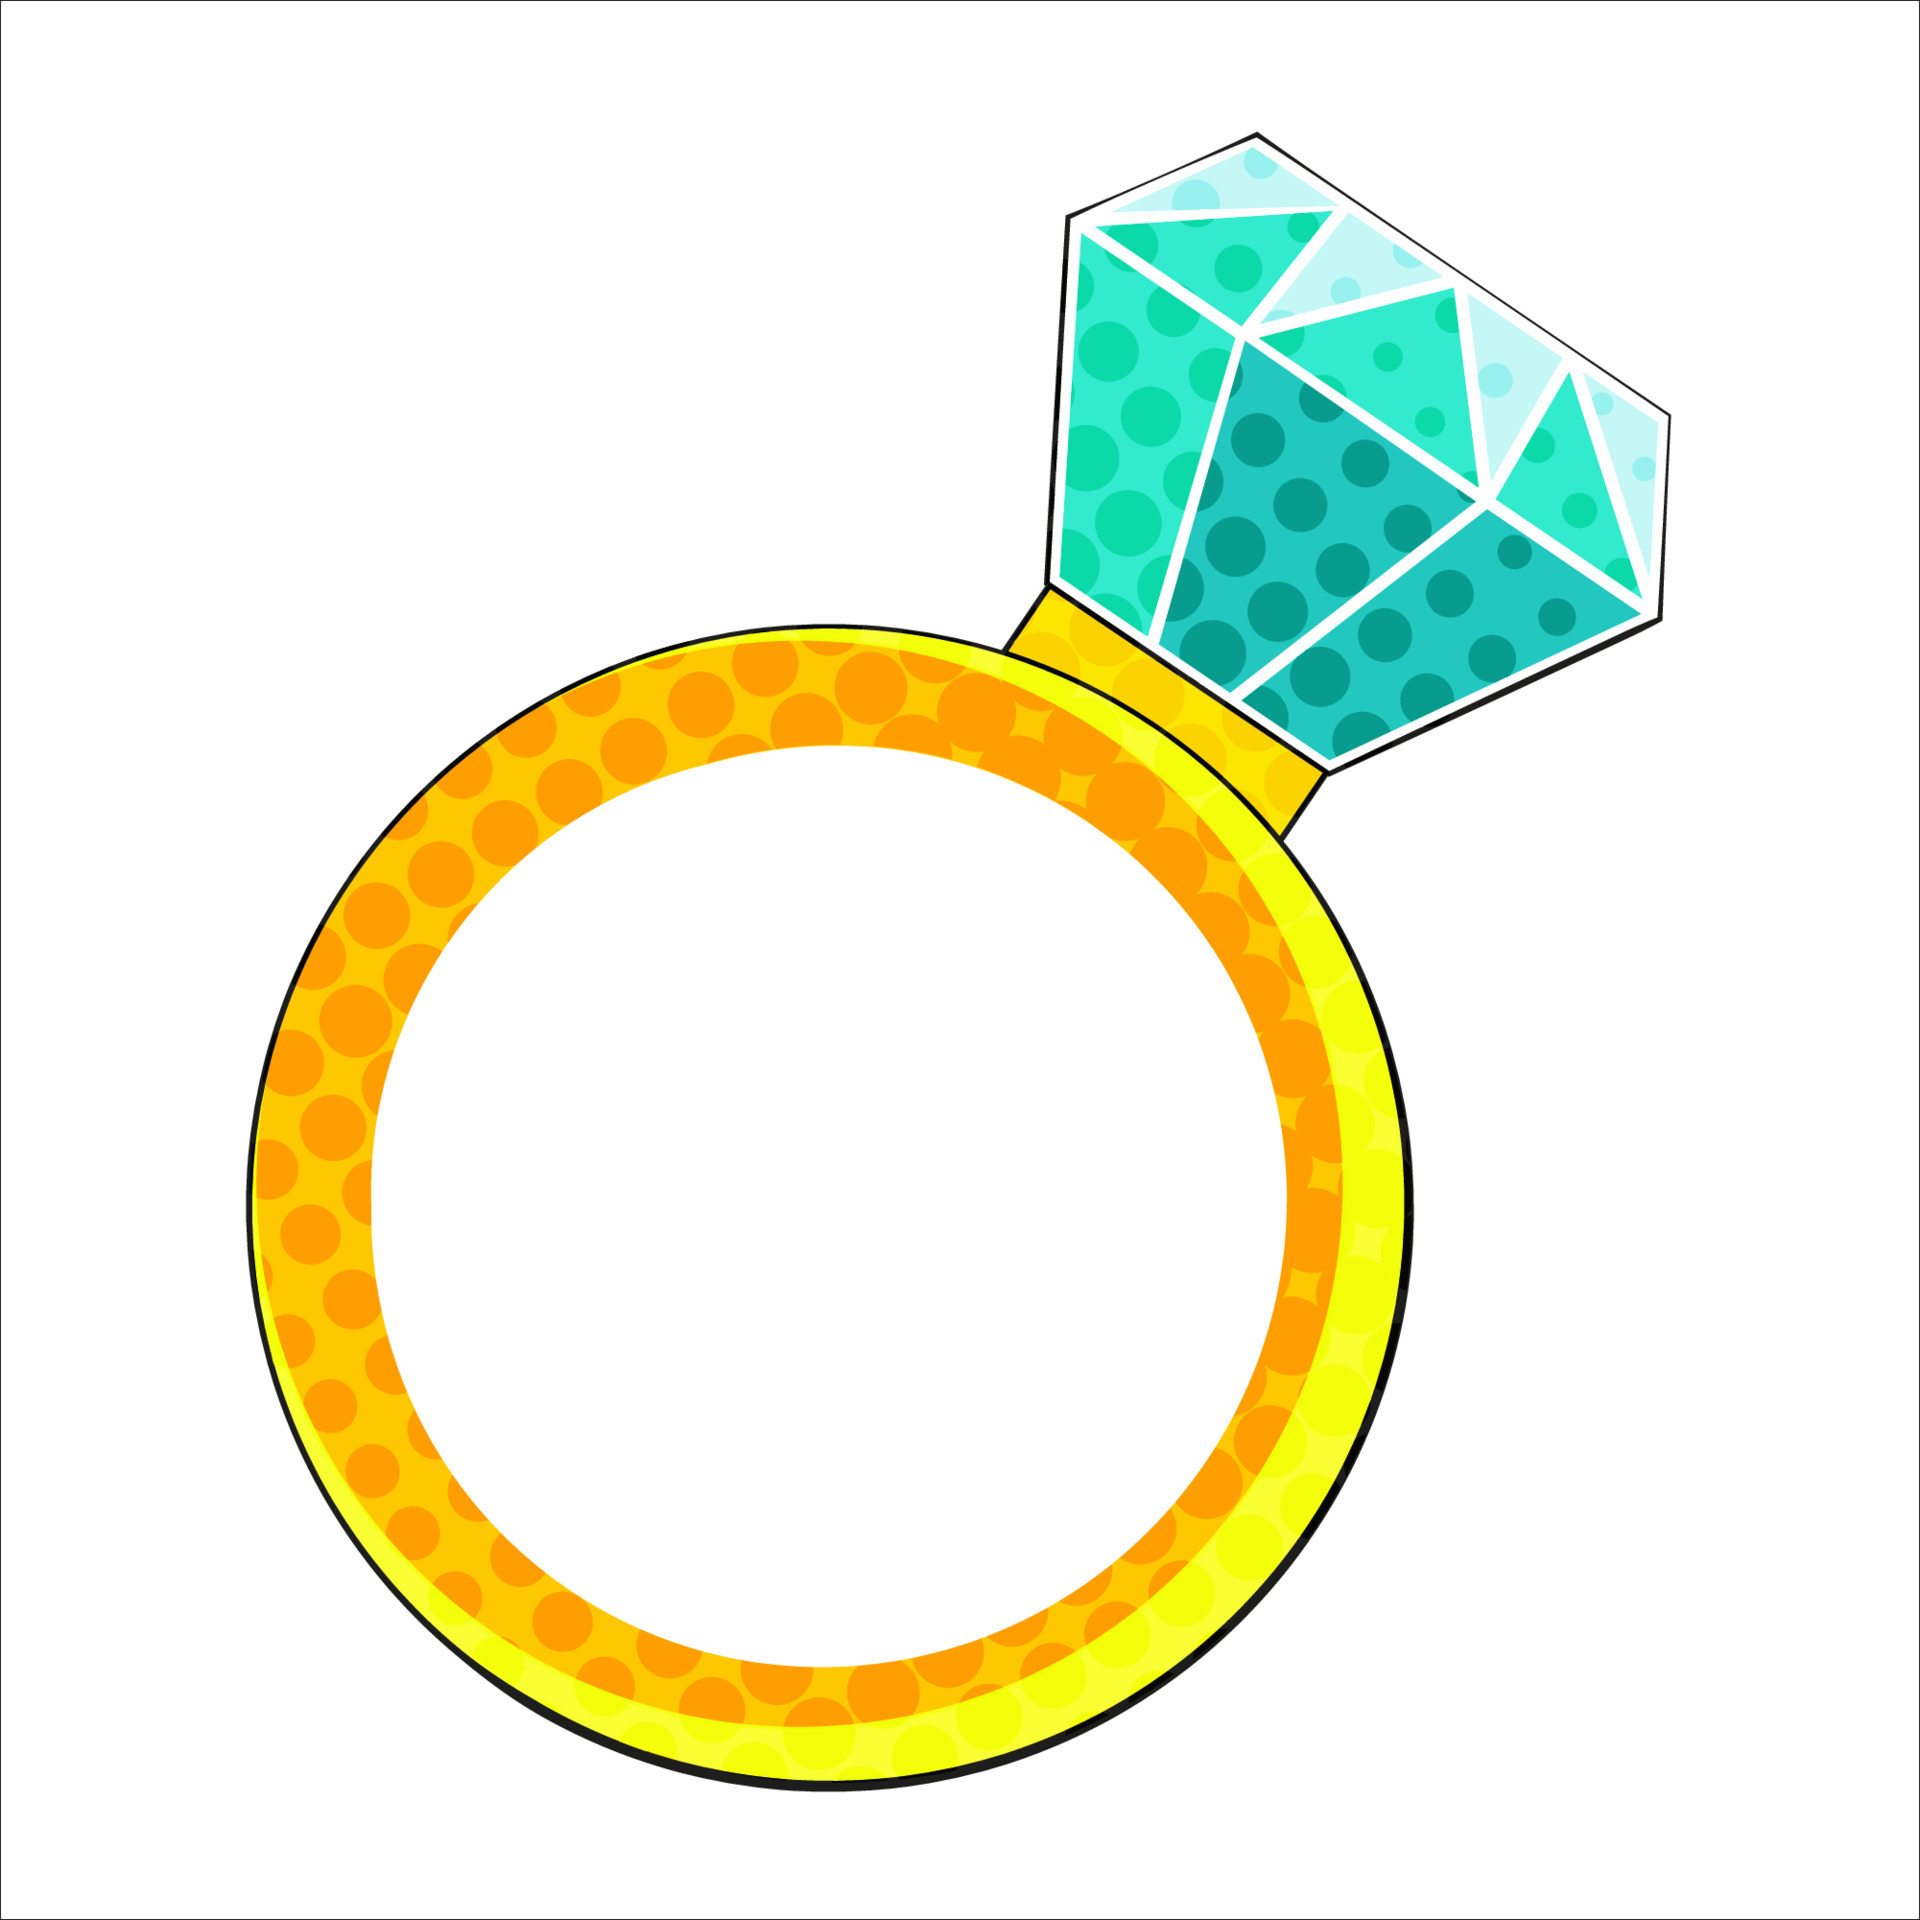 The Diamond Ring Sticker